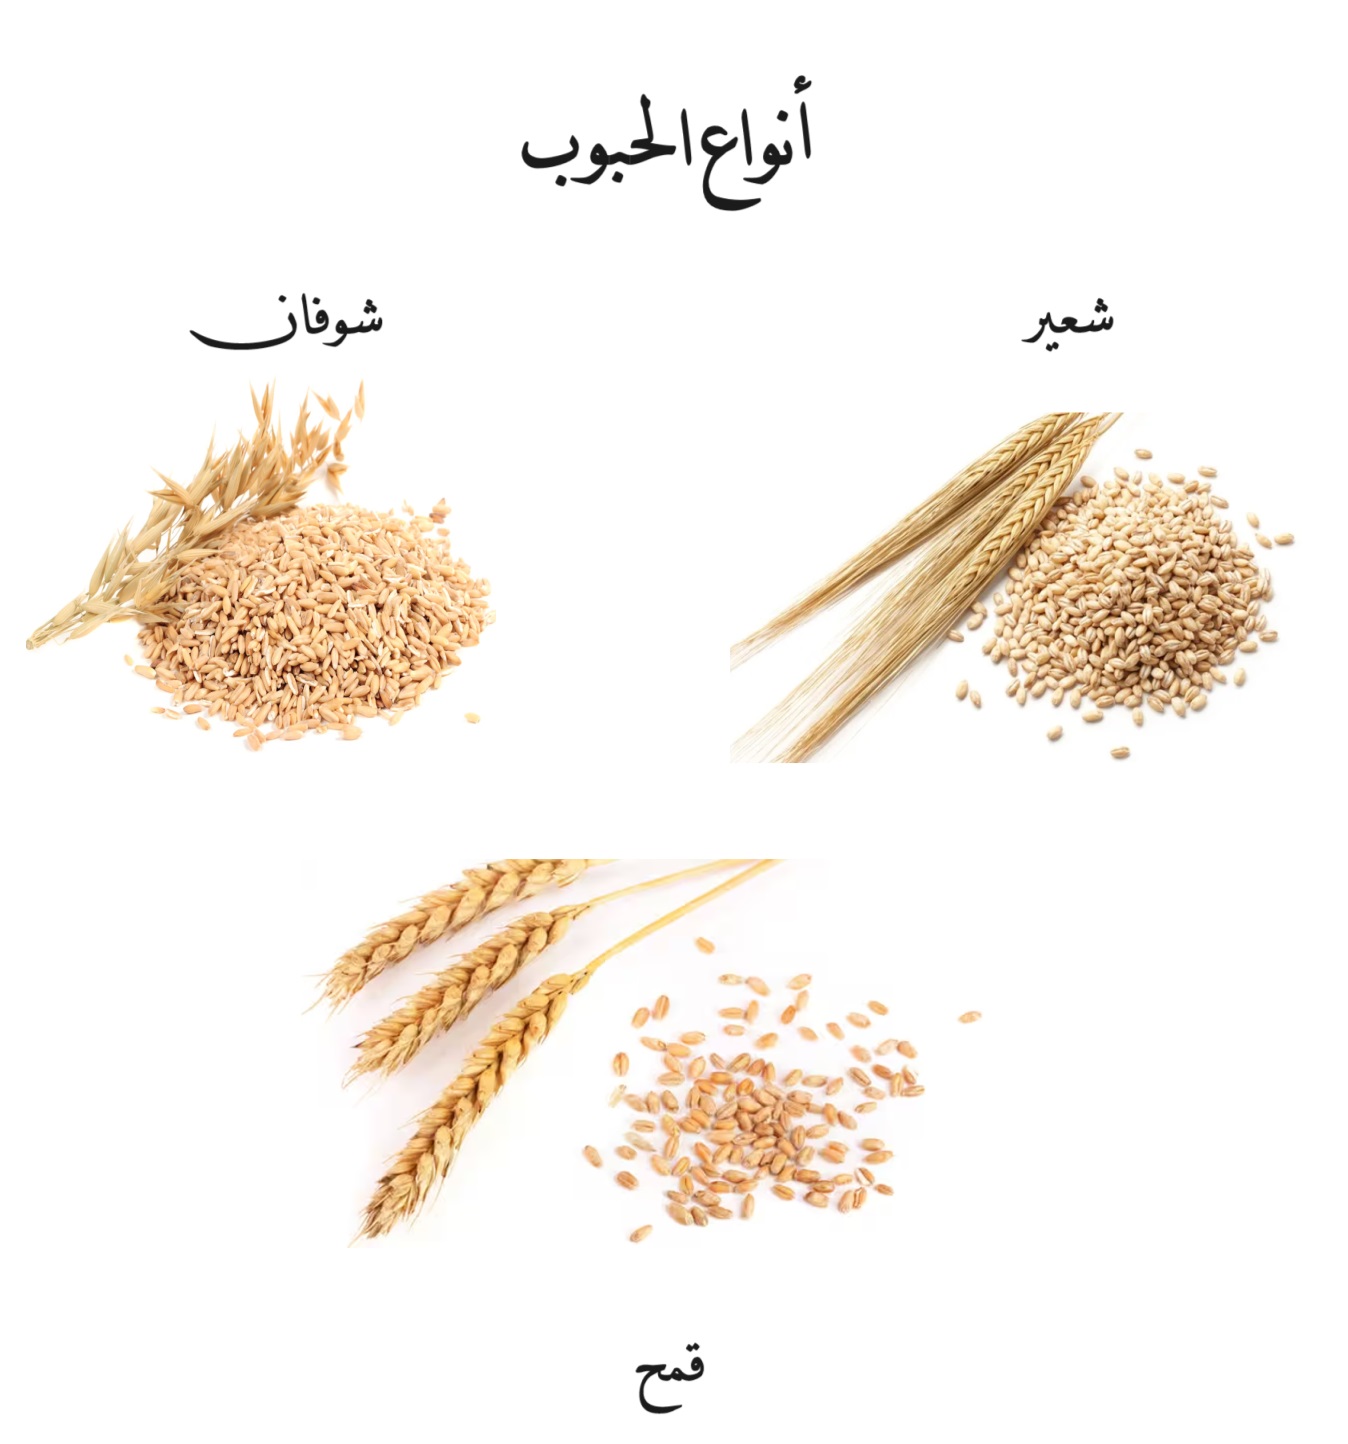 أنواع الحبوب